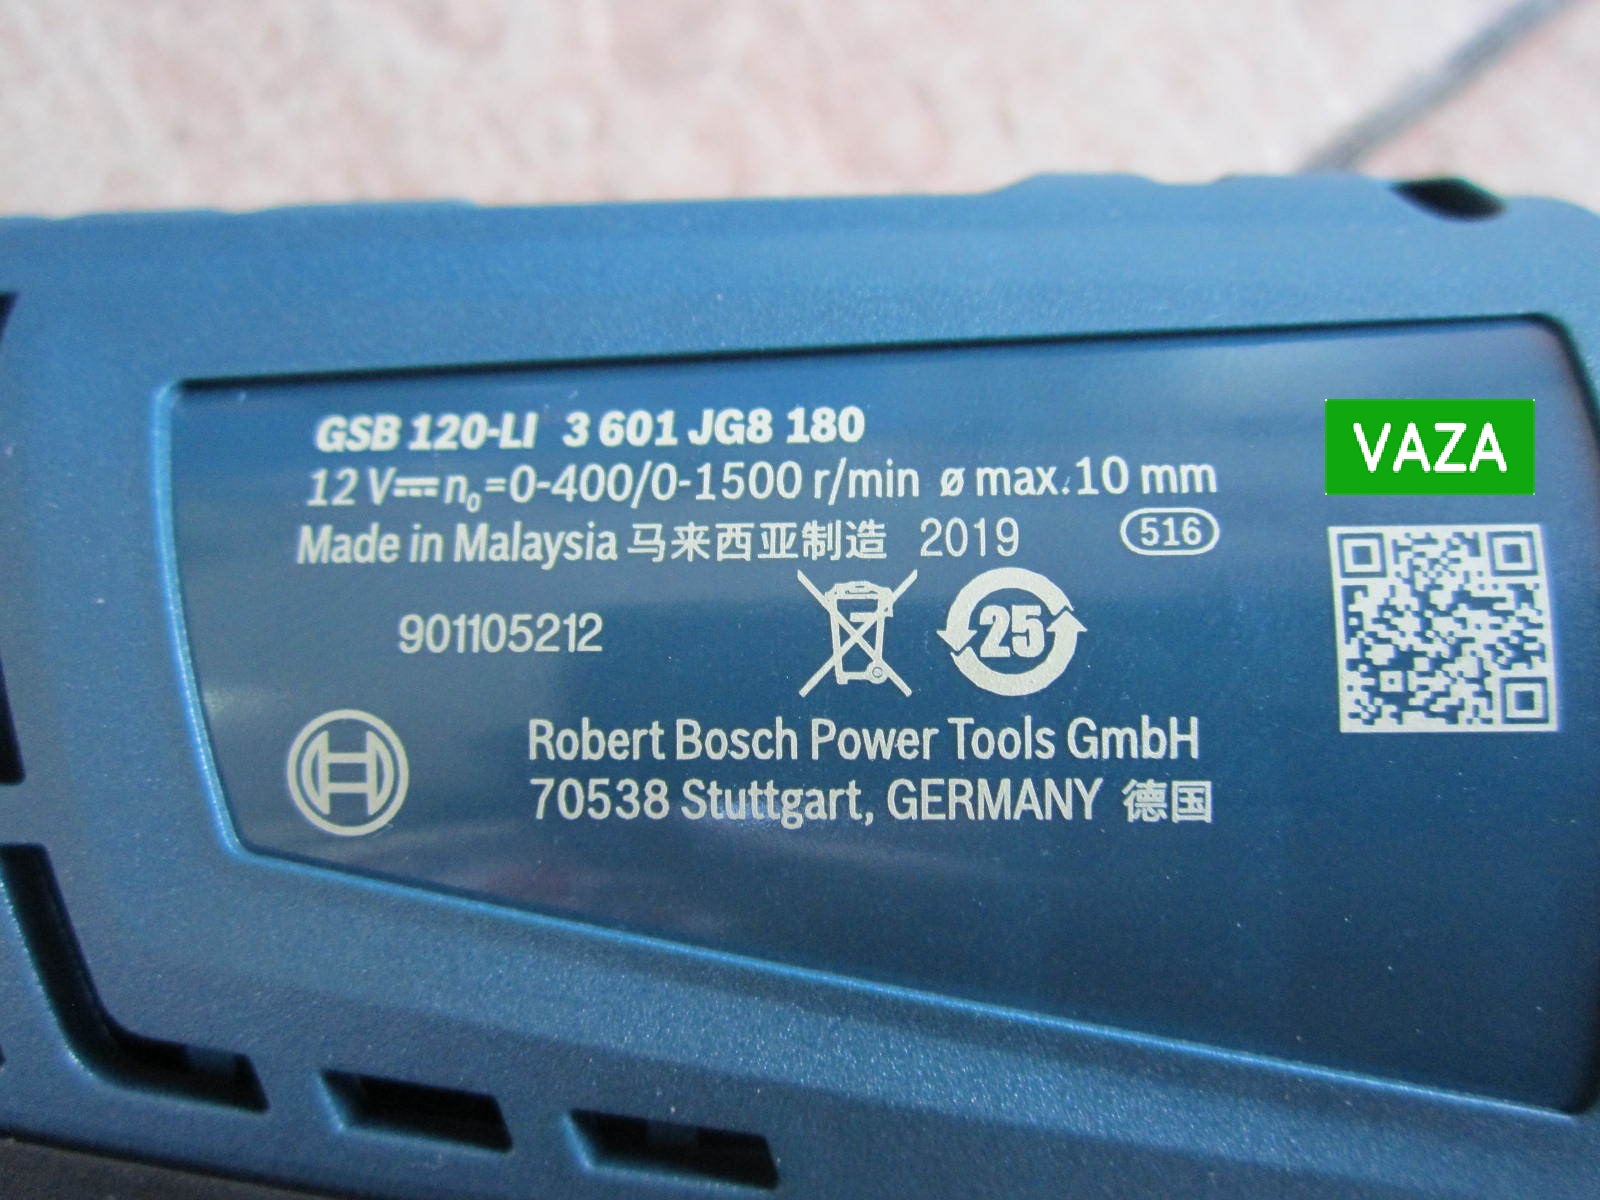 Máy khoan pin bắt vít Bosch GSB 120-LI GEN II